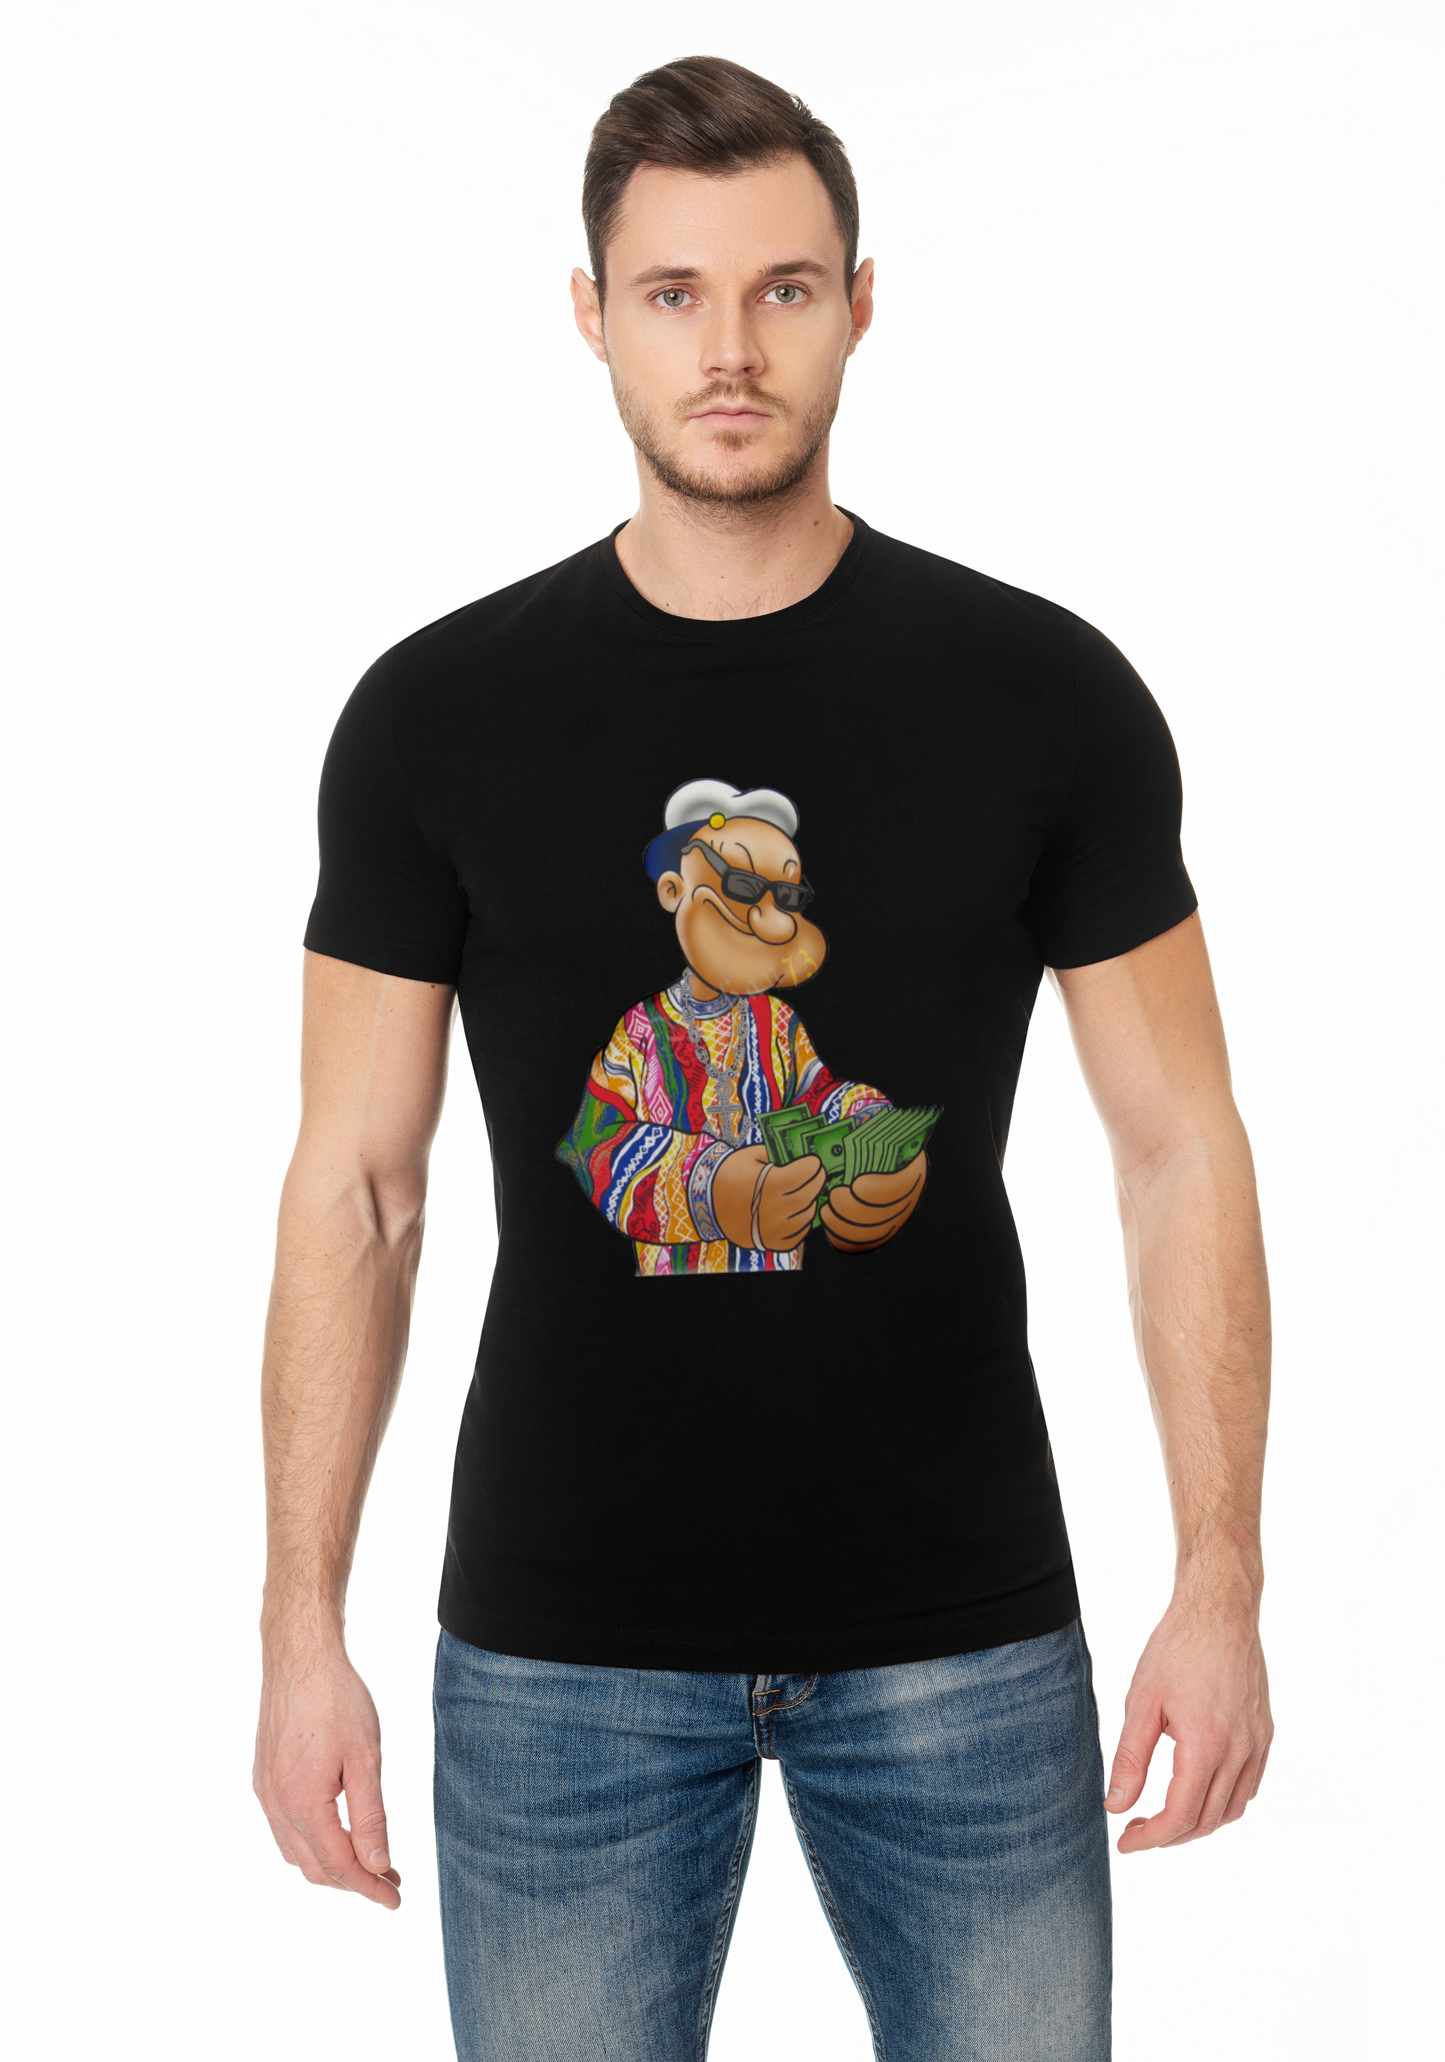 Popeye Half Sleeve T-shirt for Men